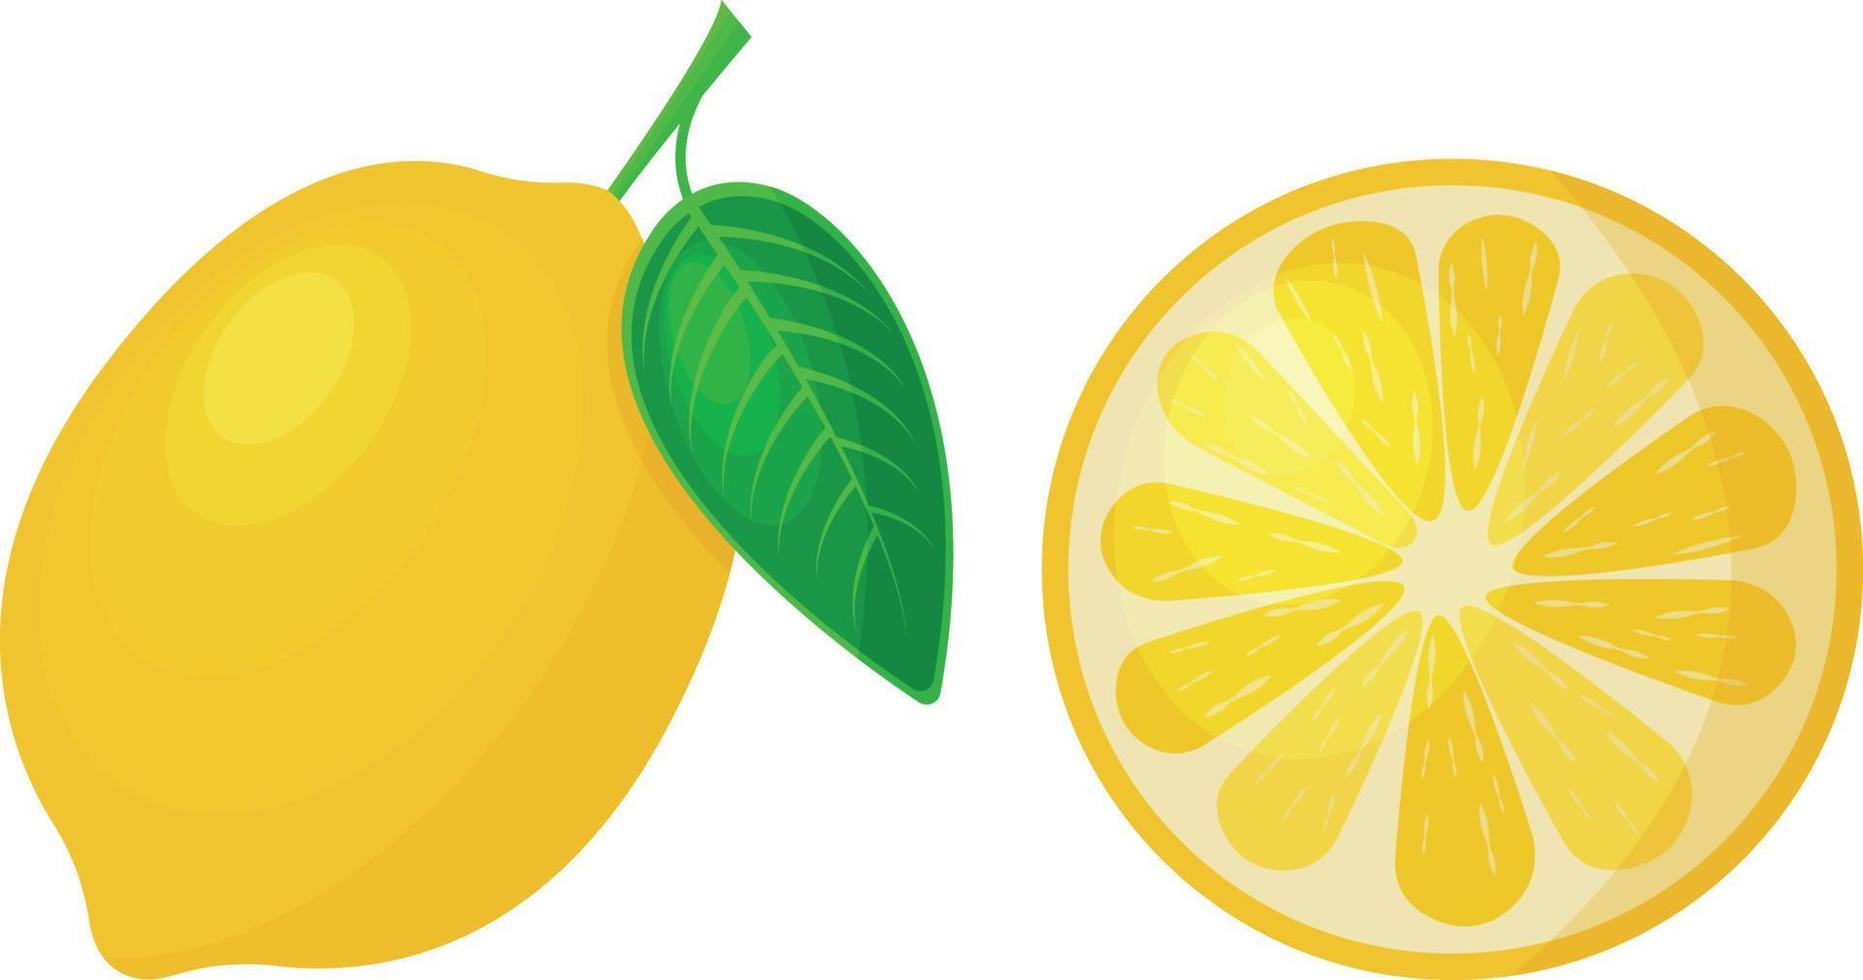 ljus mogen citron- saftig gul citron- i hela och skära form. mogen sur frukt, vektor illustration isolerat på vit bakgrund.